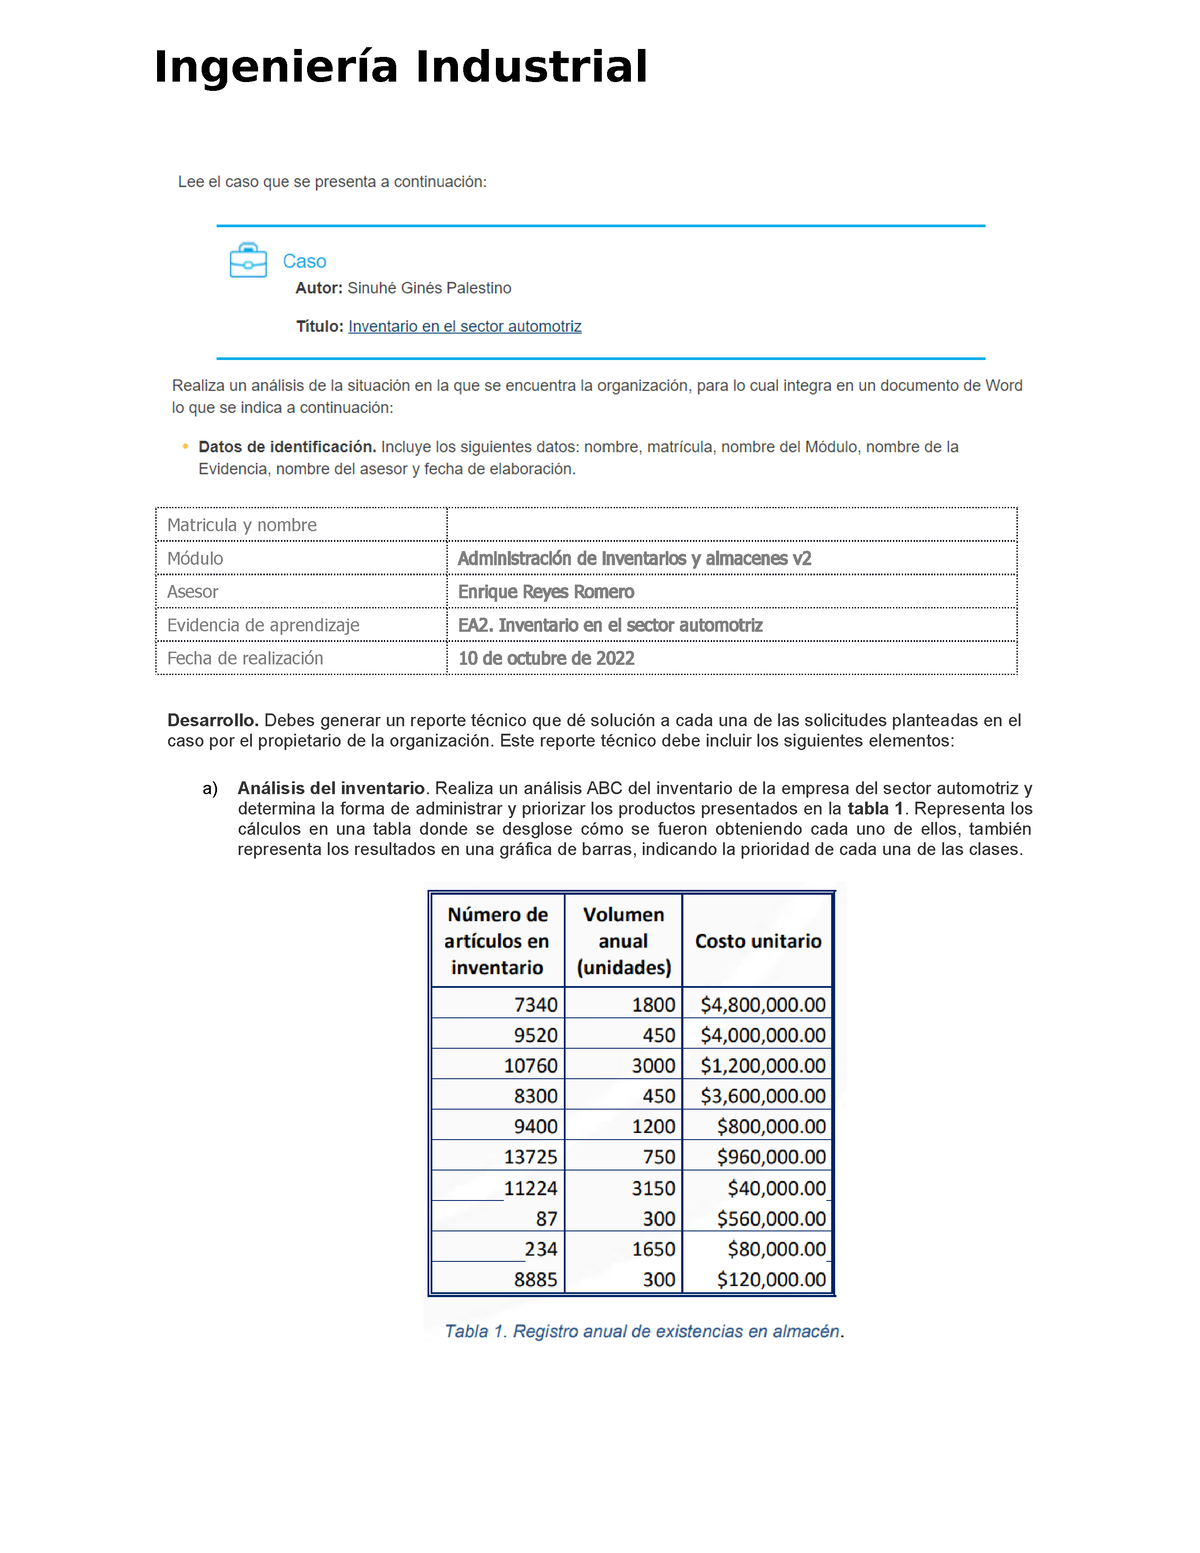 Ea2 Inventario En El Sector Automotriz Matricula Y Nombre Módulo Administración De 2865